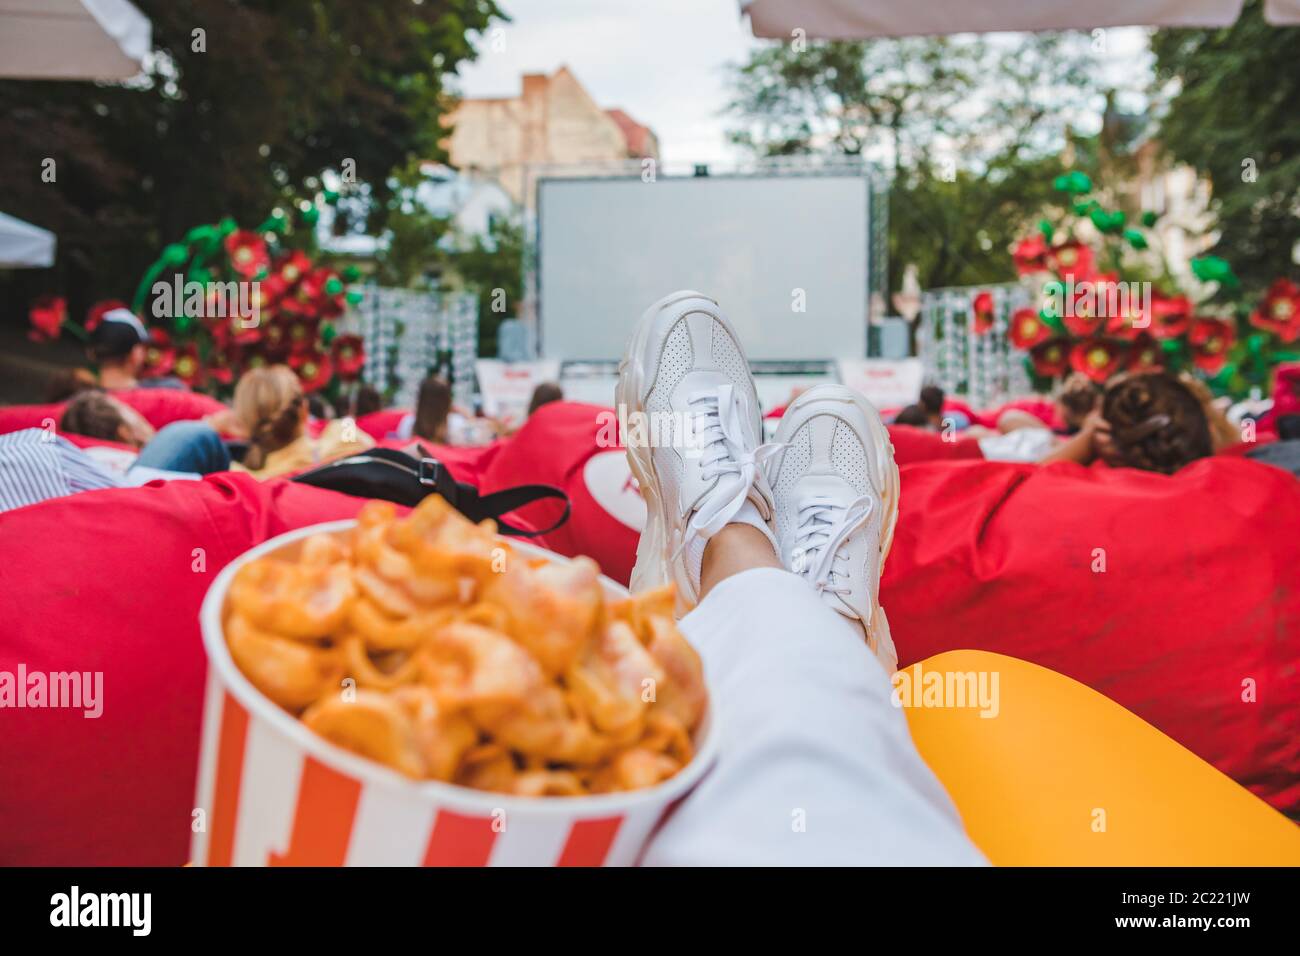 Legen Essen Snacks beim Film im Open Air Kino Stockfoto